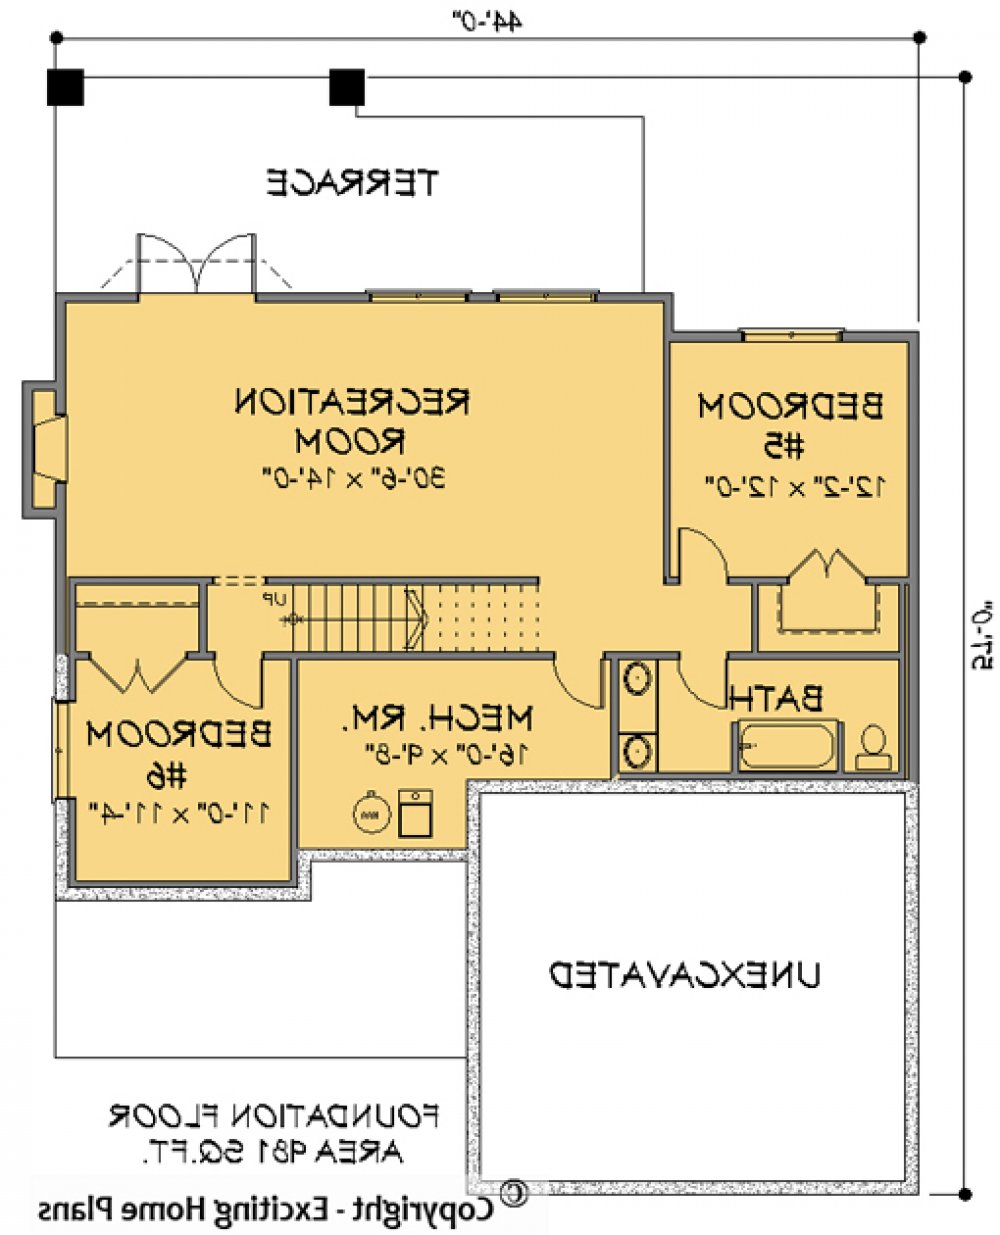 House Plan E1147-10 Lower Floor Plan REVERSE